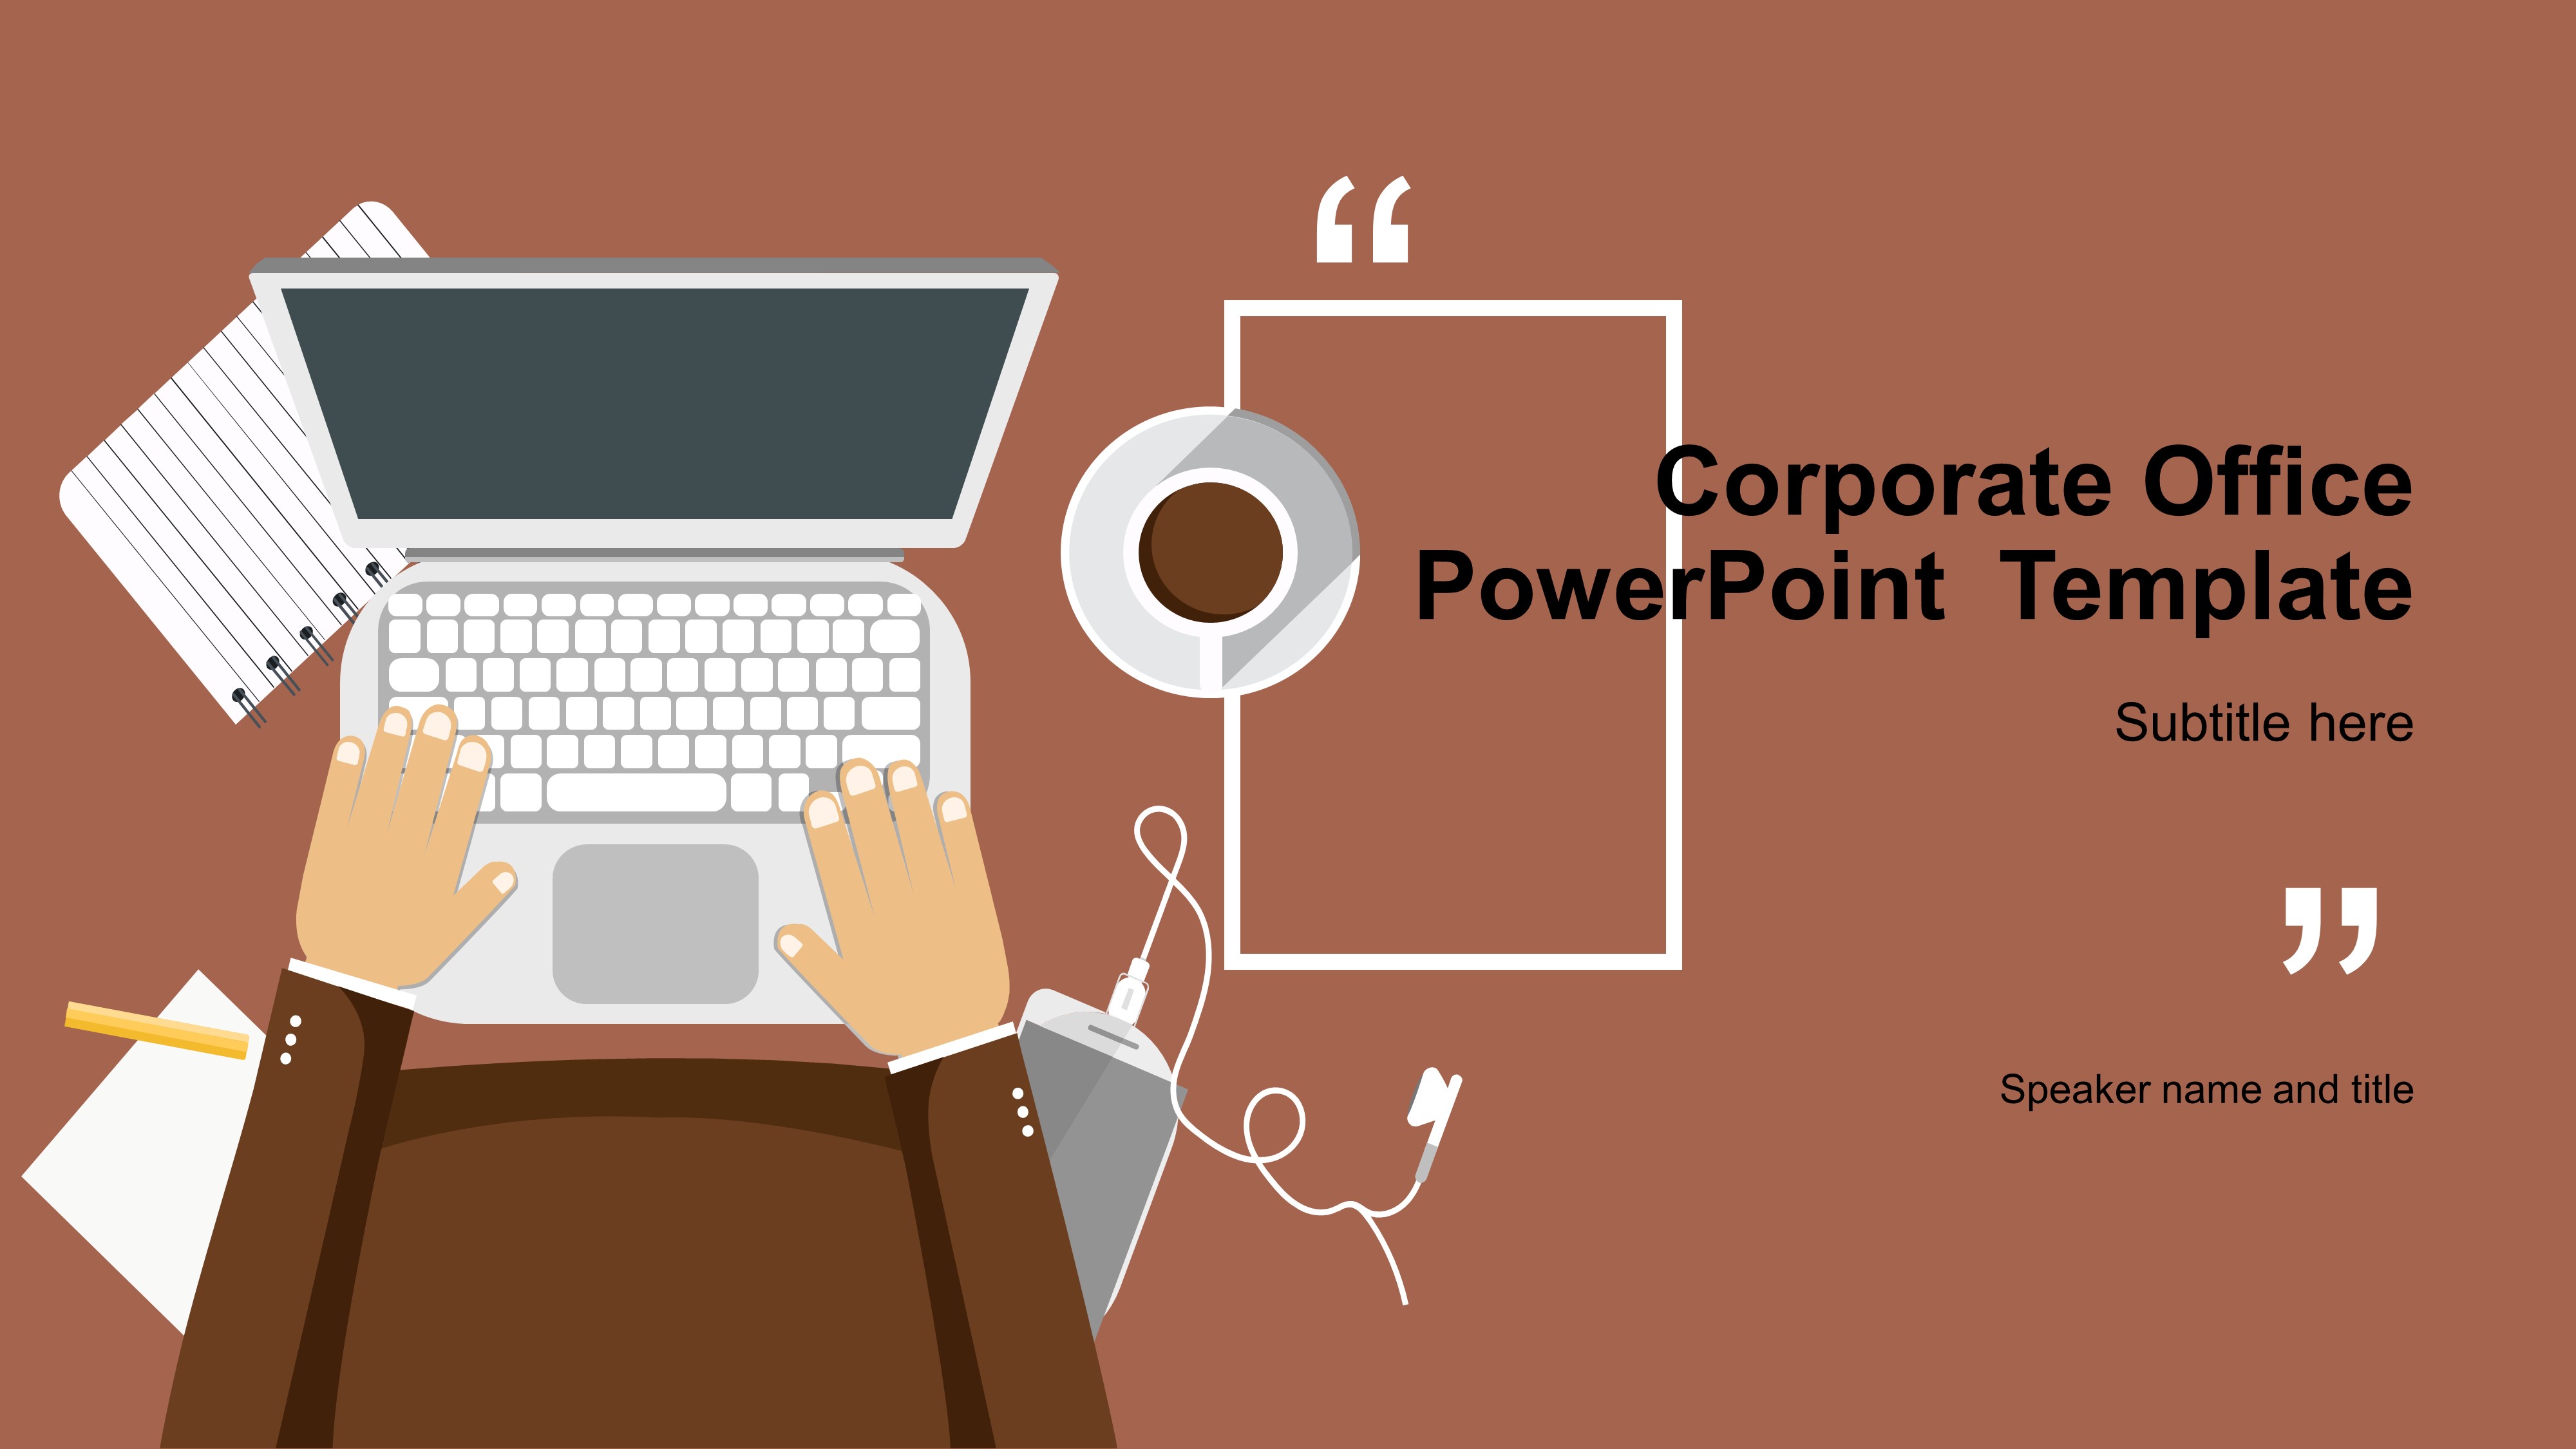 Bạn đang tìm kiếm một mẫu PowerPoint cho văn phòng doanh nghiệp của mình? Đừng bỏ qua mẫu PowerPoint vô cùng chuyên nghiệp này! Với các slide thiết kế tinh tế và dễ sử dụng, bạn sẽ nhanh chóng tạo ra bài thuyết trình đầy ấn tượng và thu hút được tầm nhìn của những người tham dự.